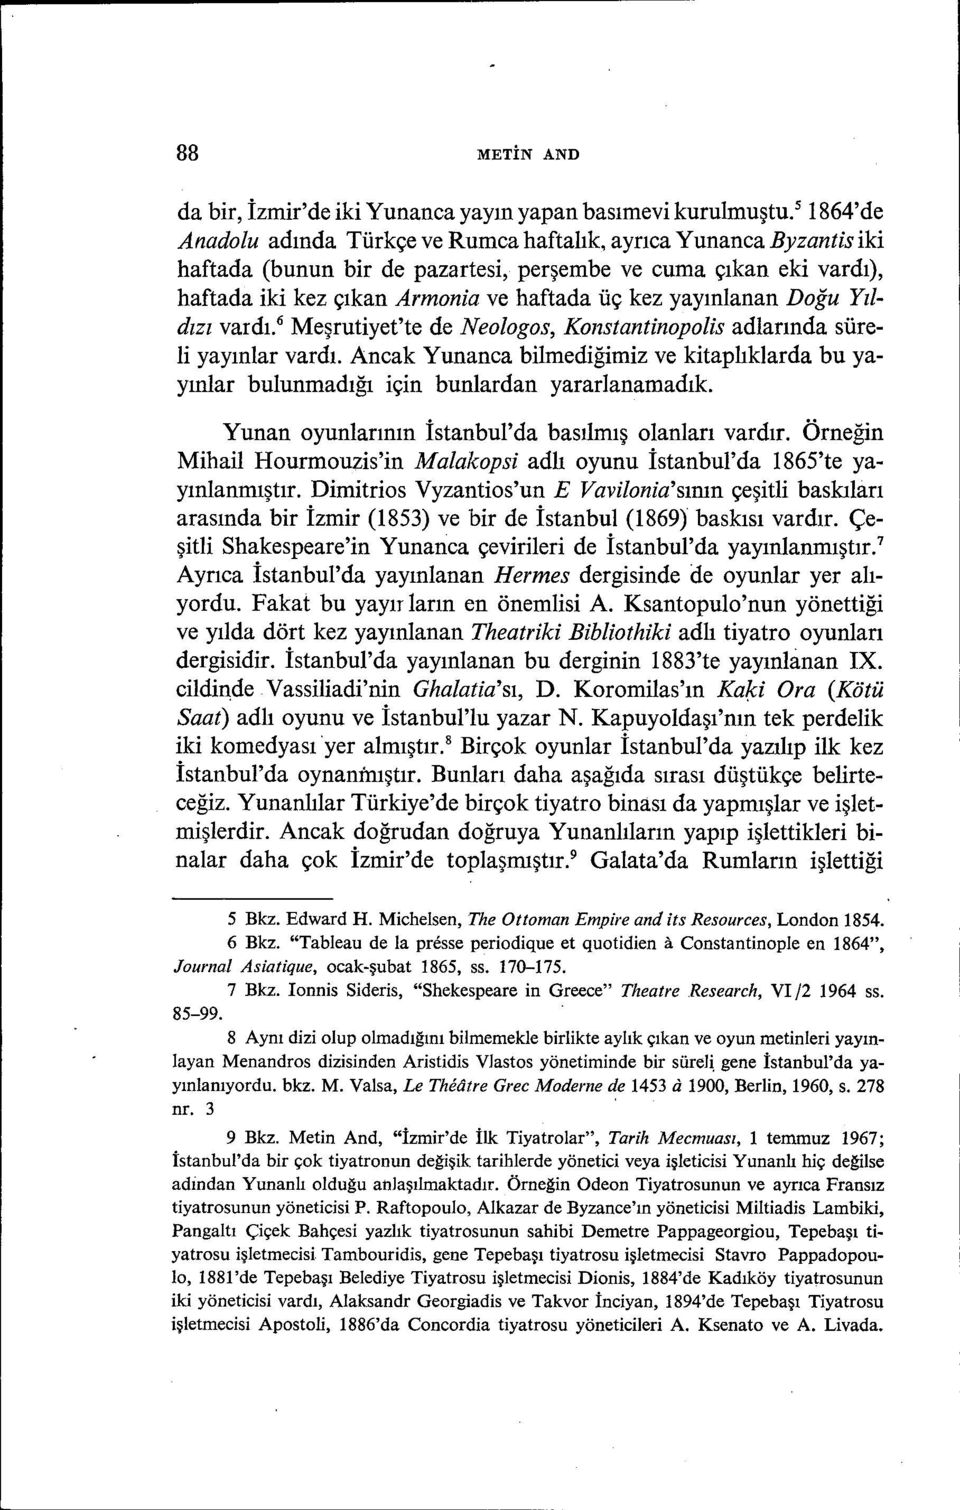 yayınlanan Doğu Yıldızı vardı. 6 Meşrutiyet'te de Neologos, Konstantinopolis adlarında süreli yayınlar vardı.